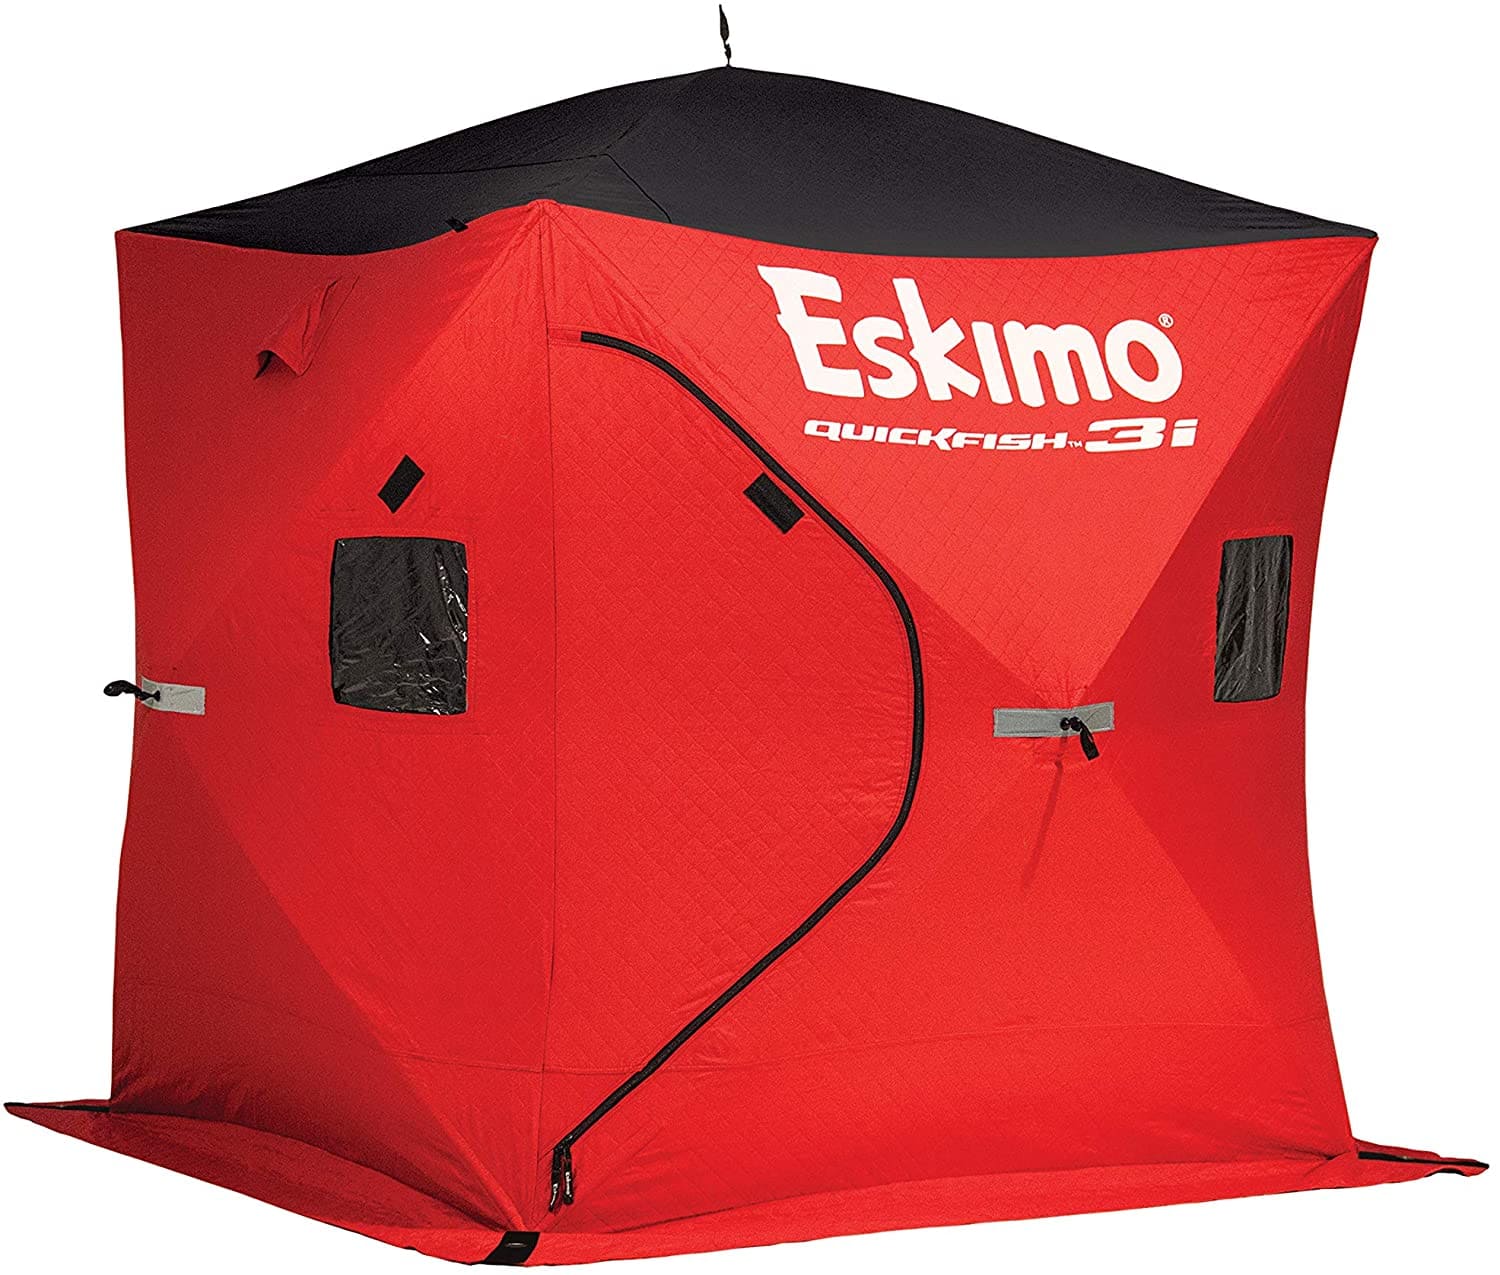 Tente Eskimo quickfish 3i (isolée) - 